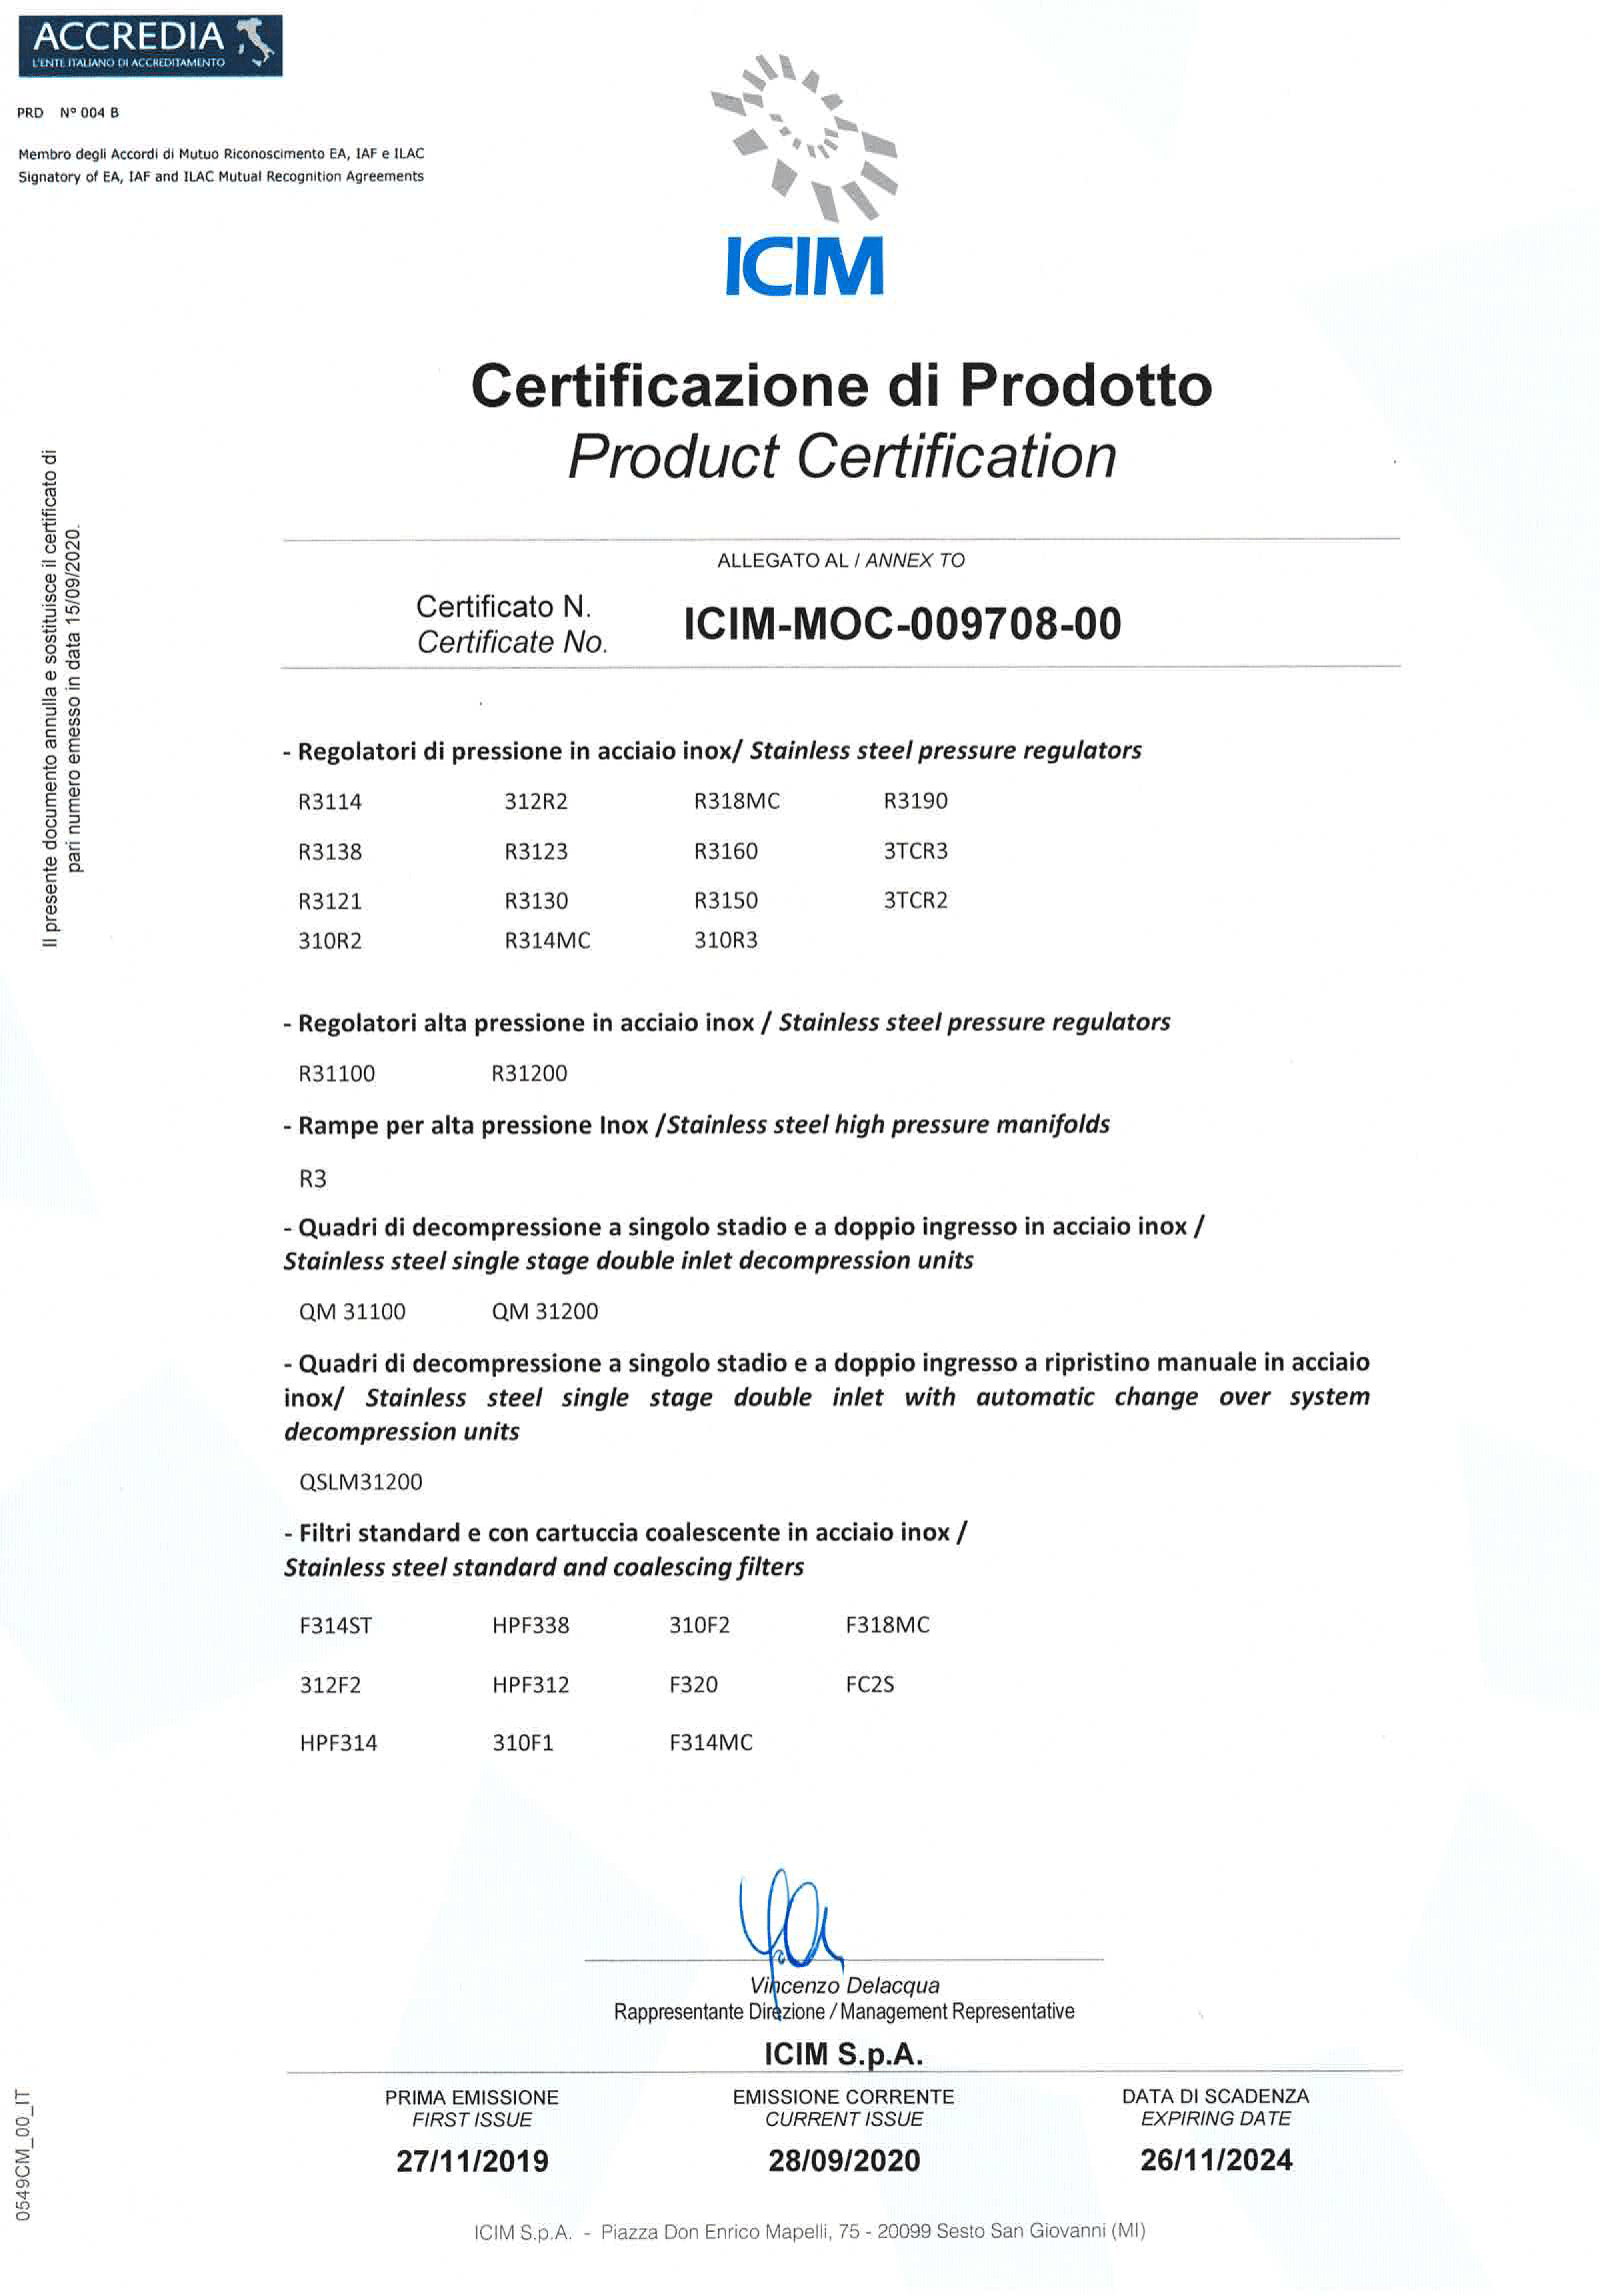 ICIM MOC-009708-00 Certificato di Prodotto 2020-2